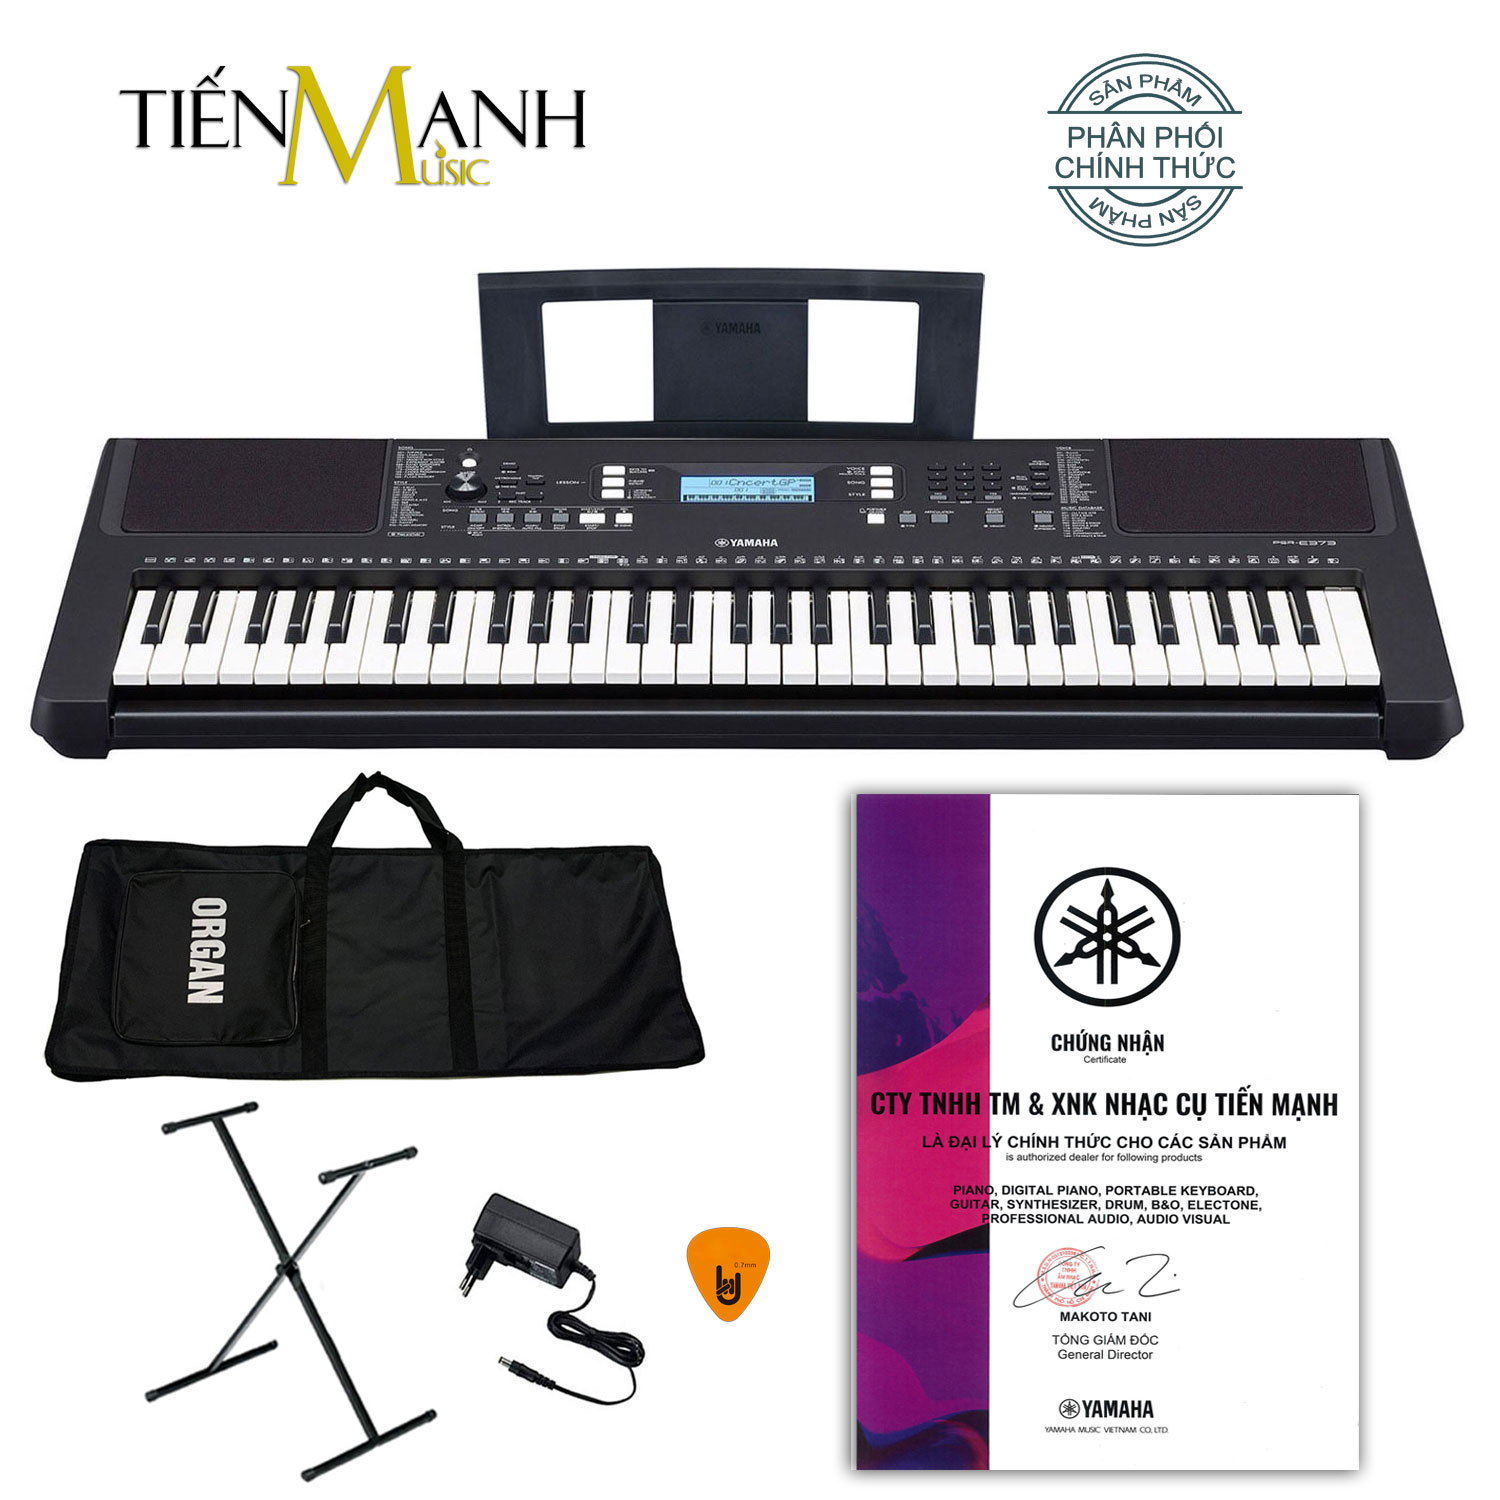 Bộ Đàn Organ Yamaha PSR-E373 - Đàn, Chân, Bao, Nguồn Keyboard PSR E373 Hàng Chính Hãng - Có tem chống hàng giả Bộ CA - Kèm Móng Gẩy DreamMaker